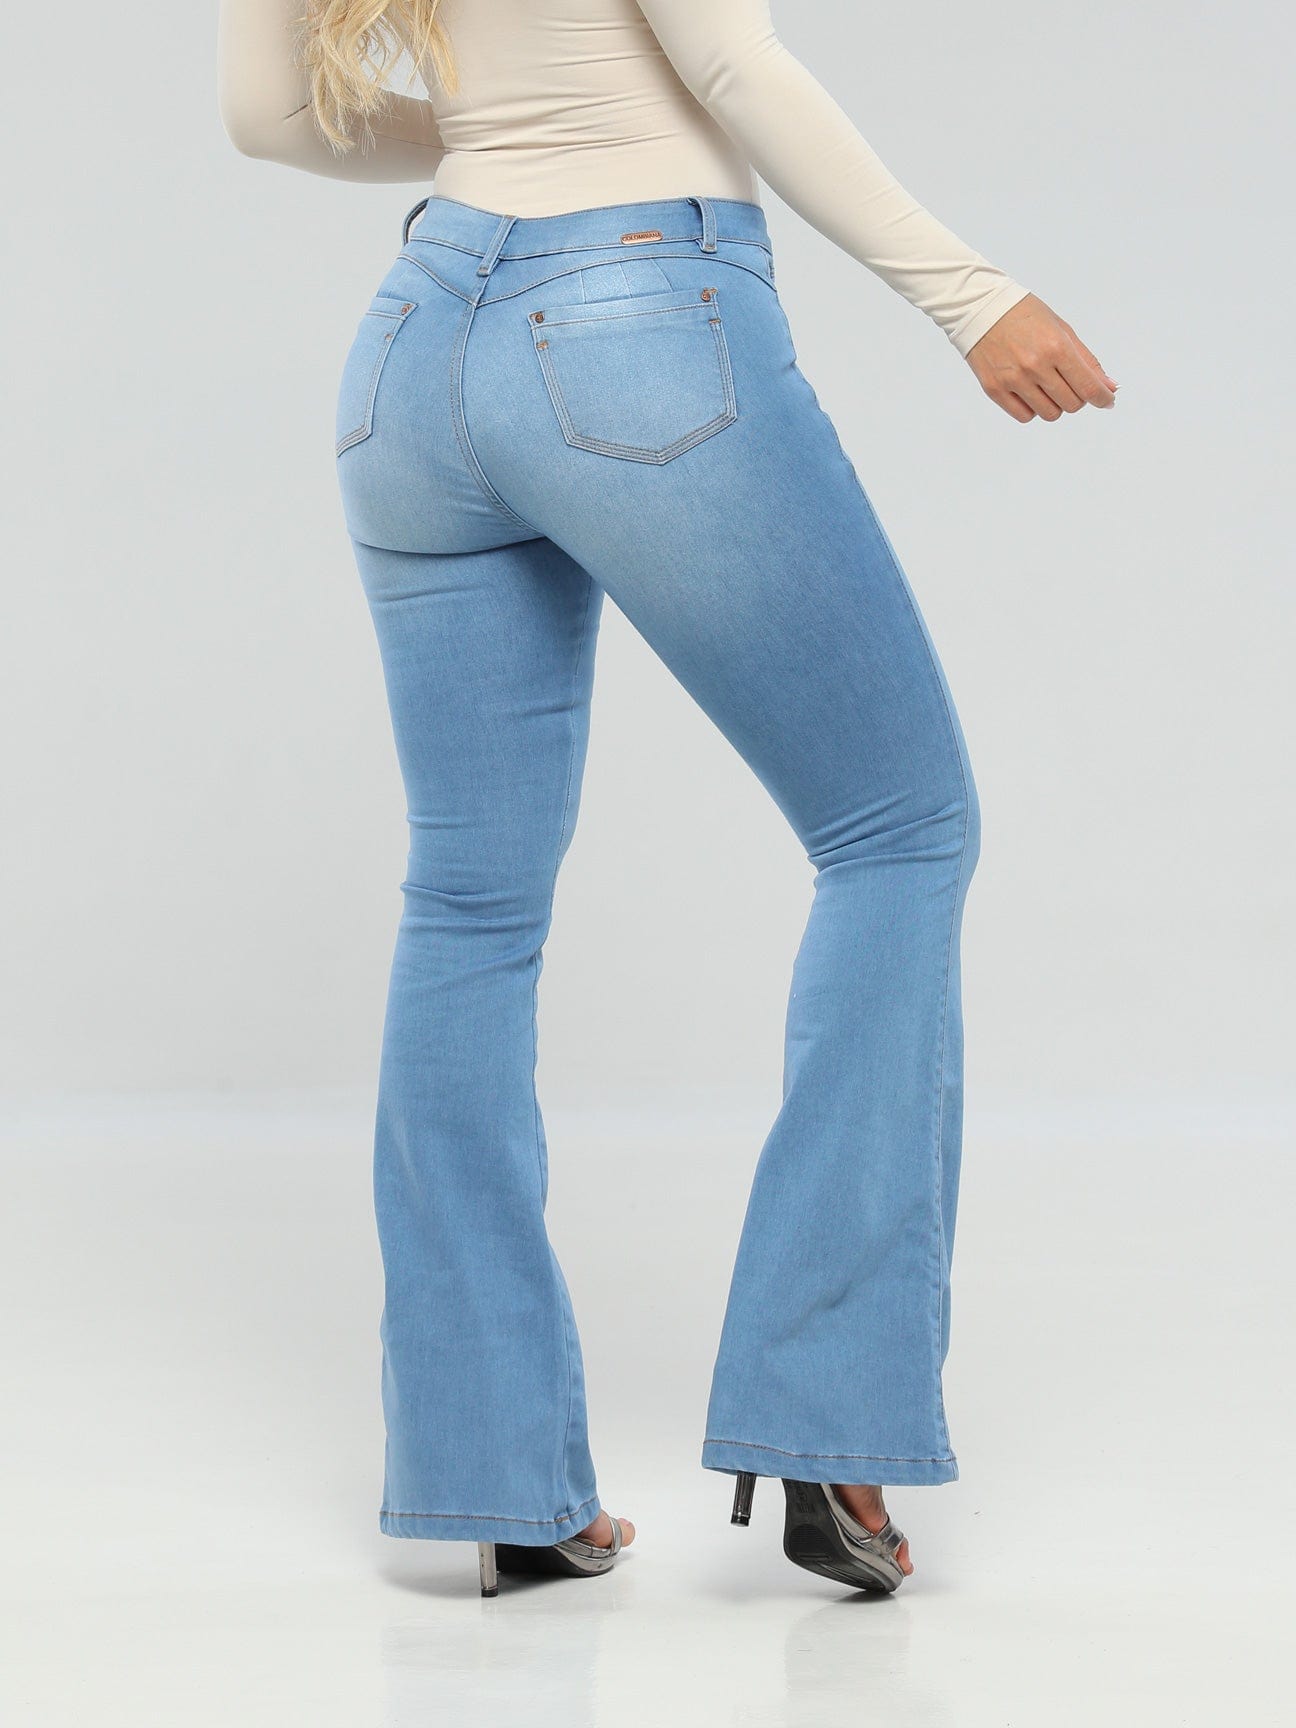 Serrat 100% Authentic Colombian Push Up Jeans – Colombian Jeans